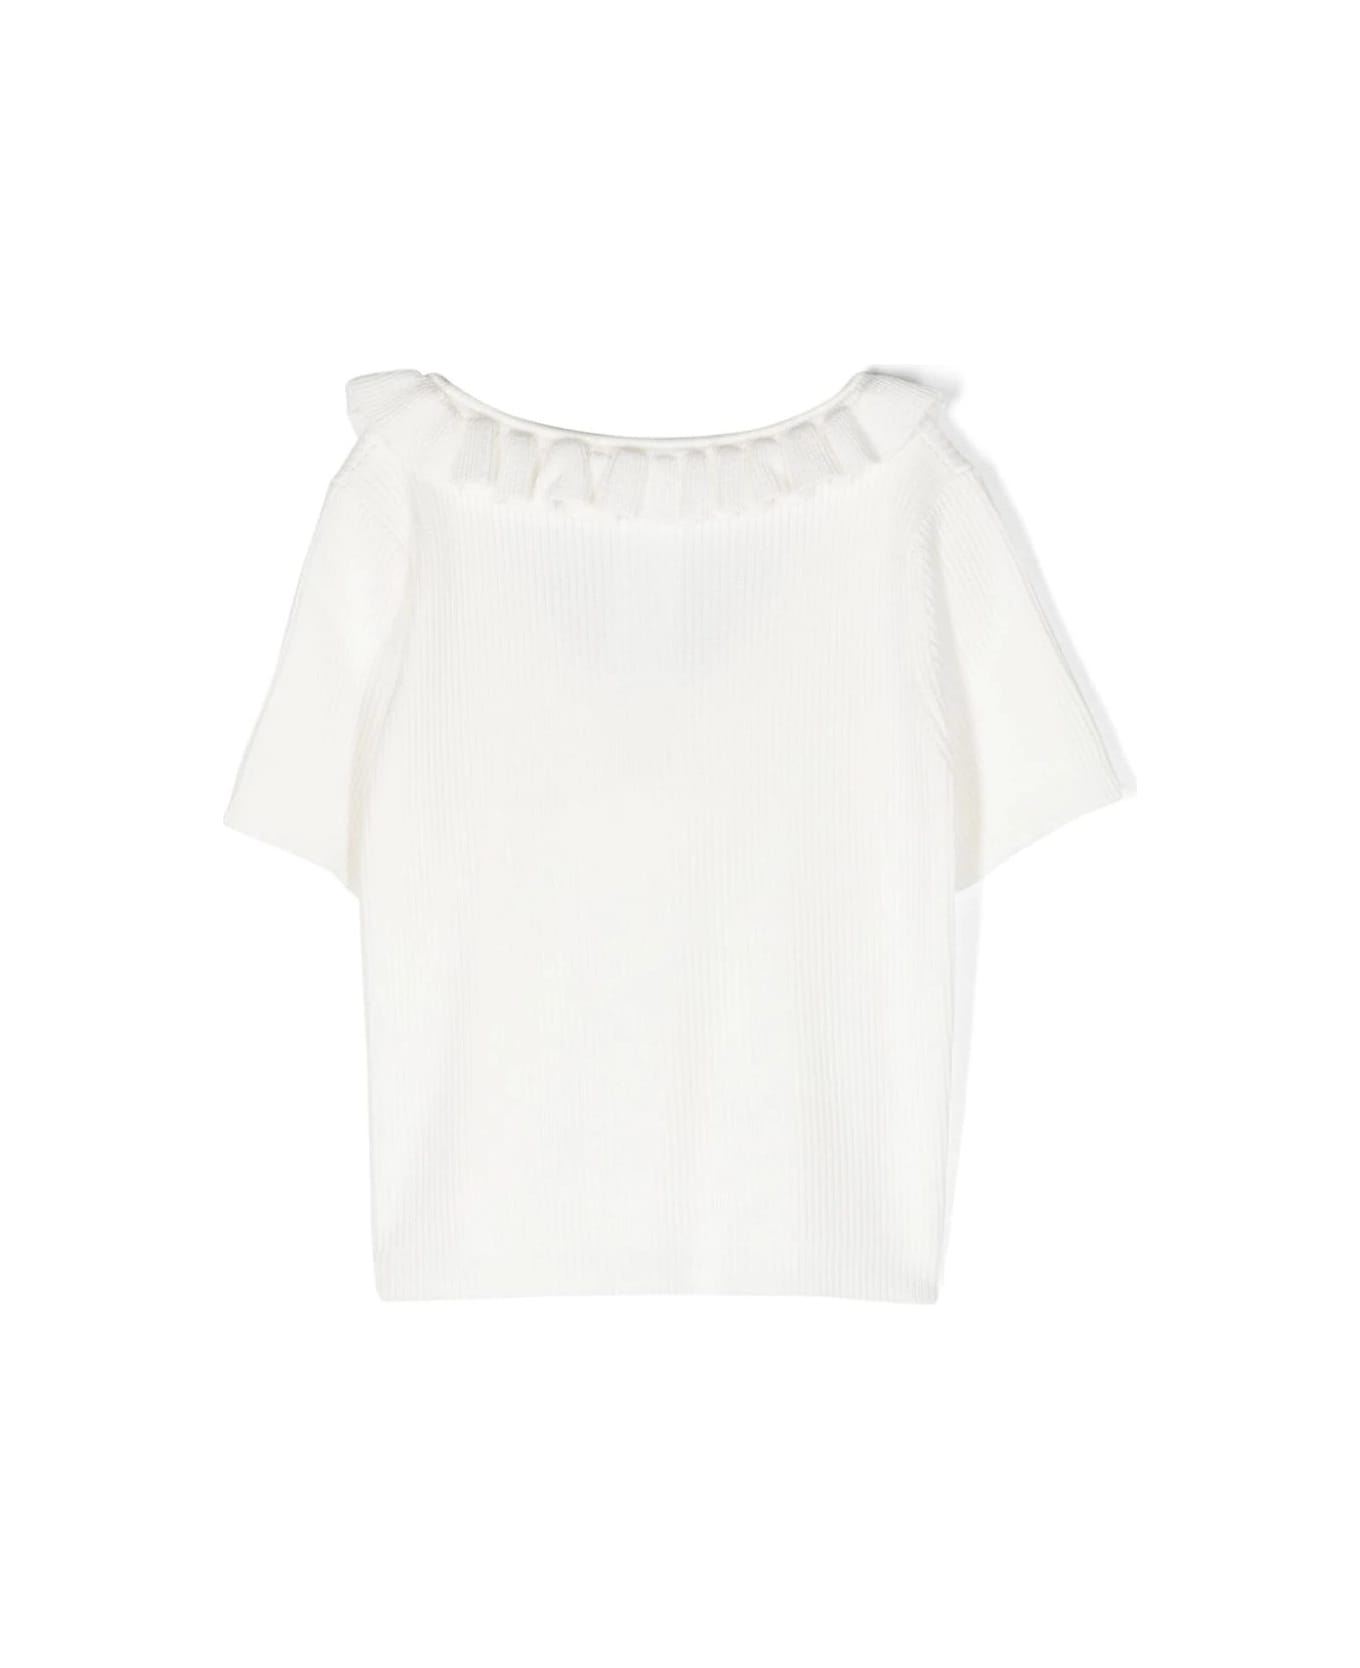 Miss Blumarine White Ribbed T-shirt With Ruffles - White